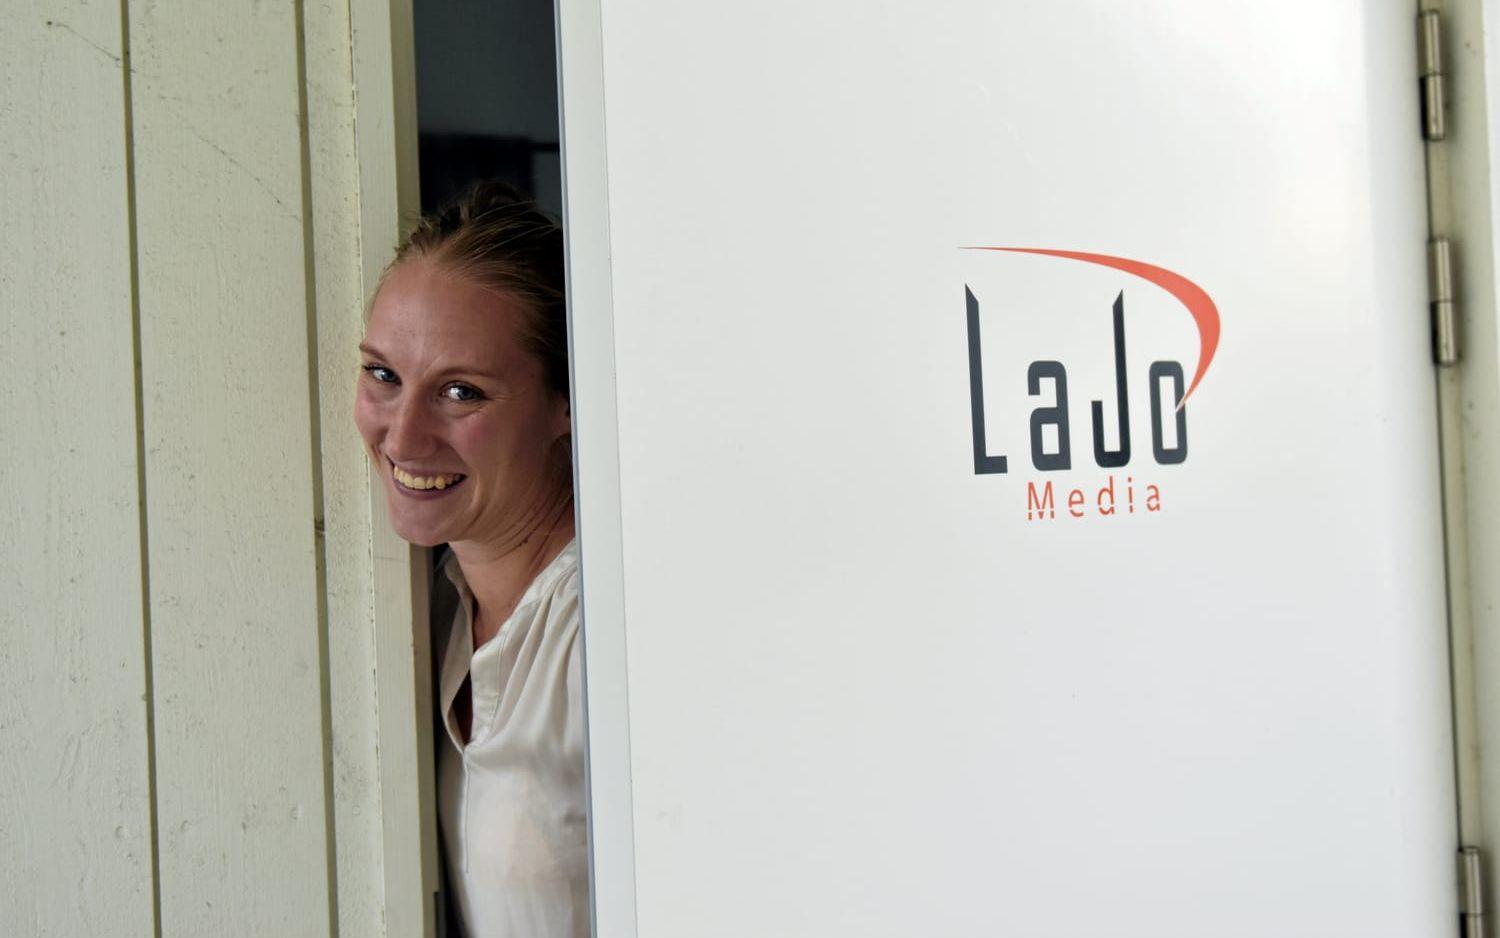 Det egna företaget Lajo media har Lotta Langer och Niklas Johansson drivit från hemmet i Trönningenäs.